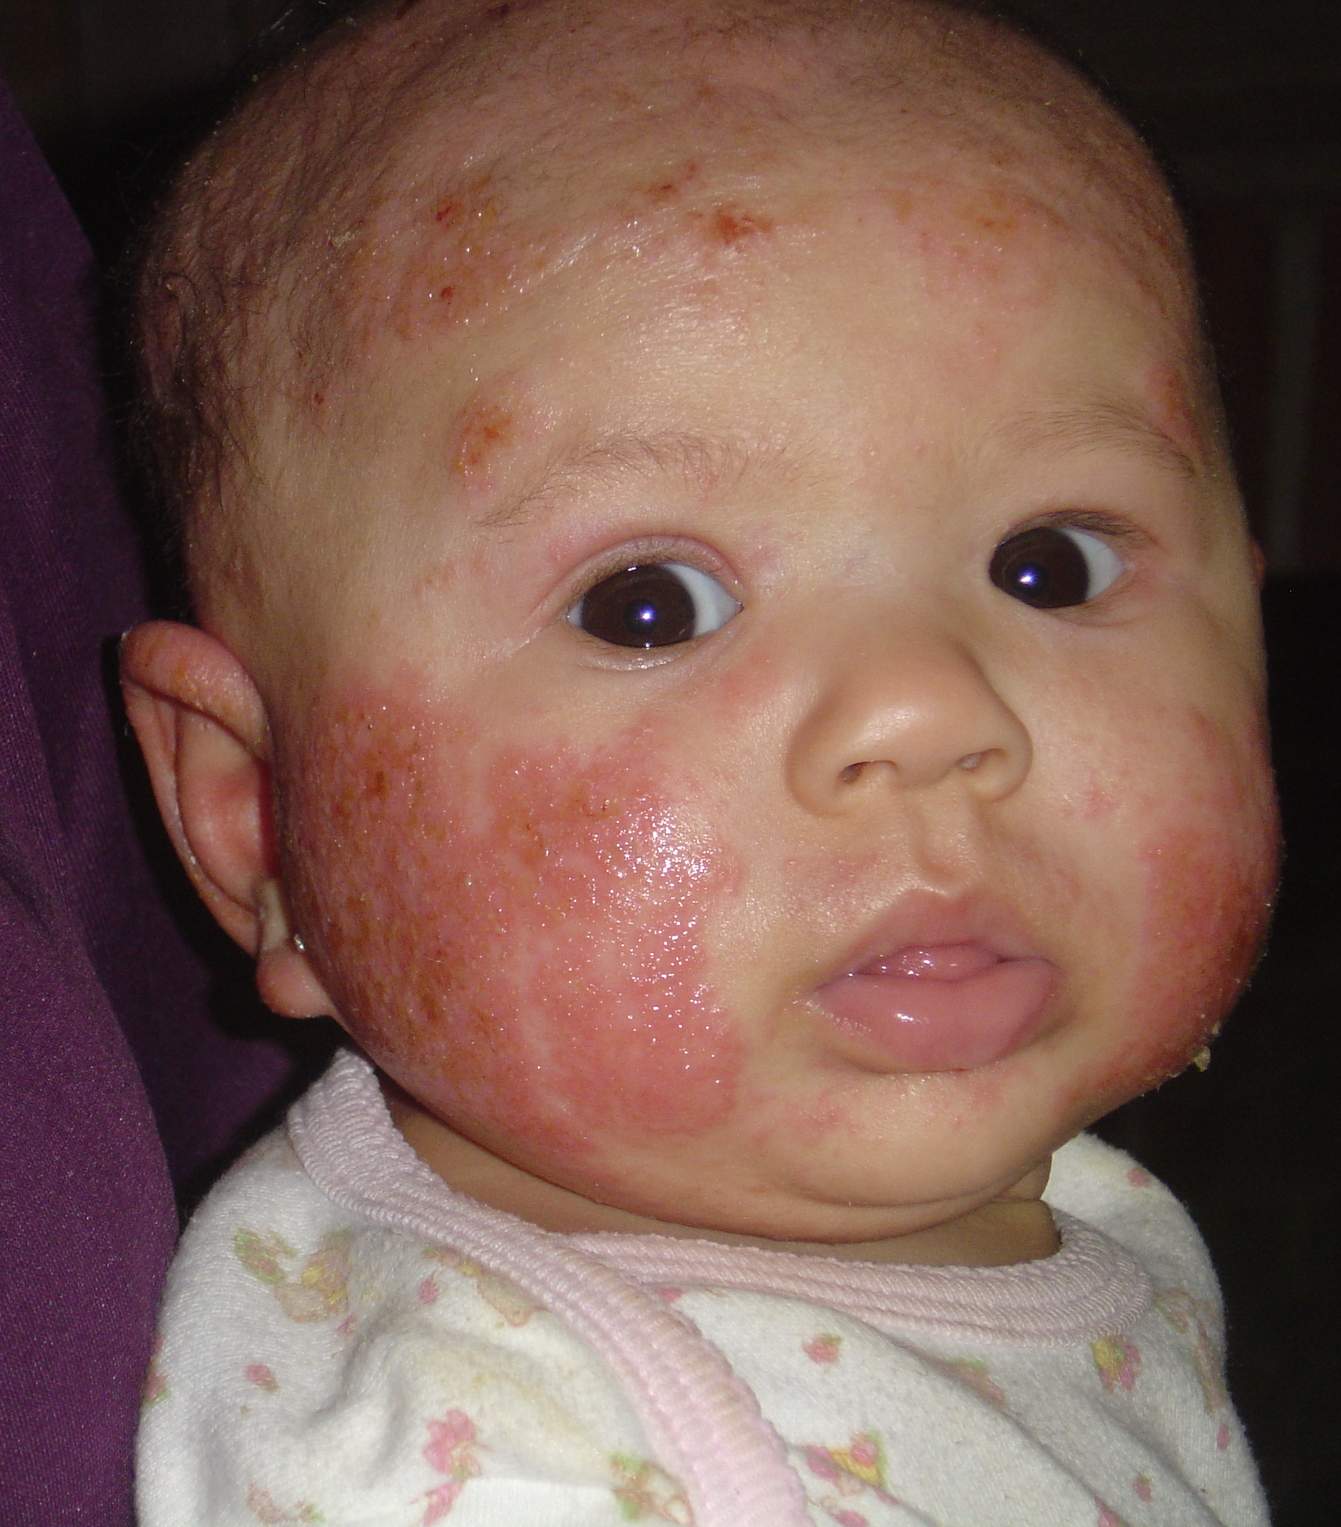 Eczema On Babies